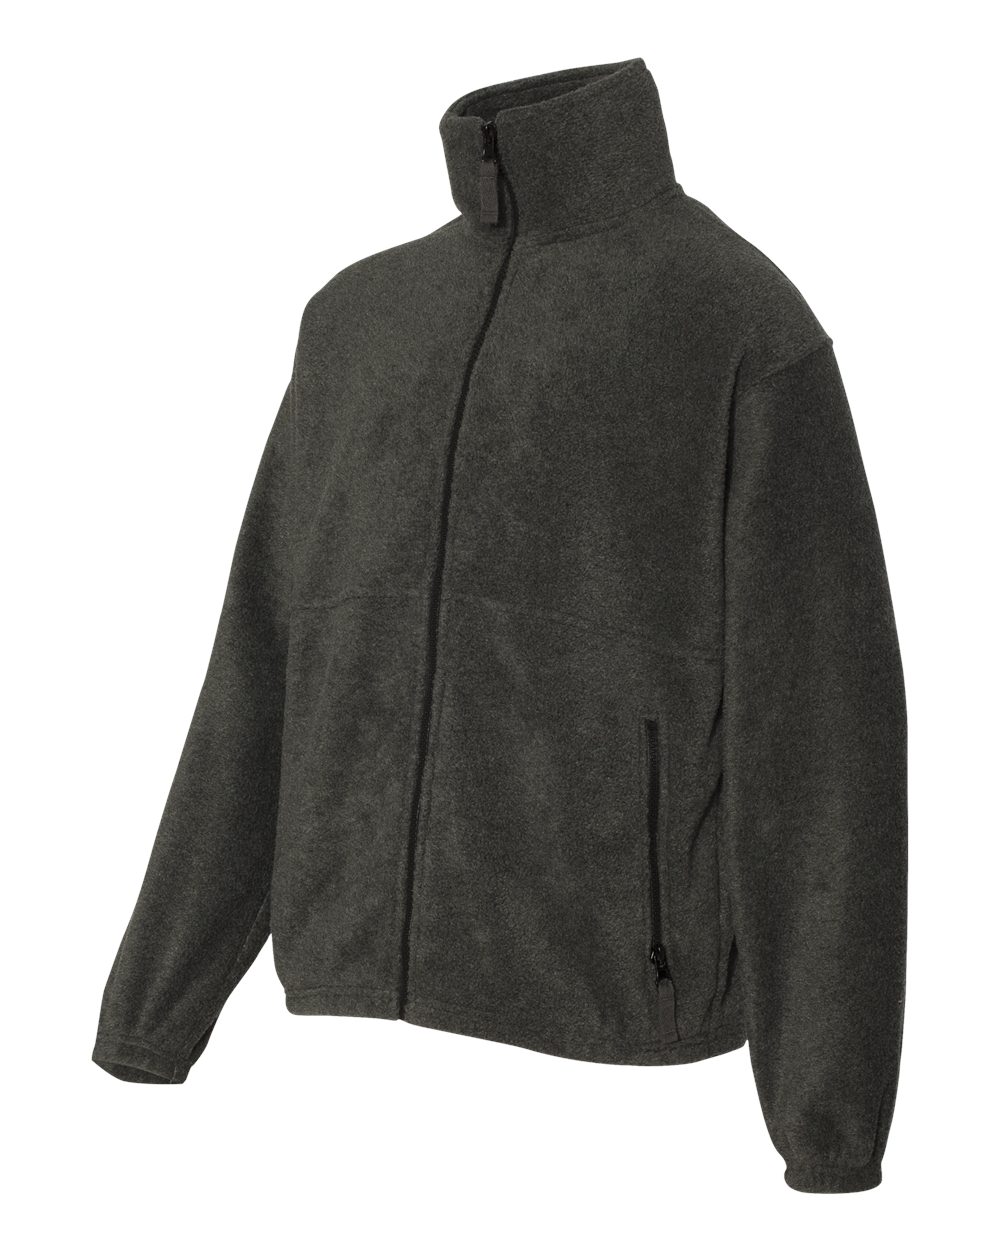 Sierra Pacific Youth Fleece Full-Zip Jacket - 4061